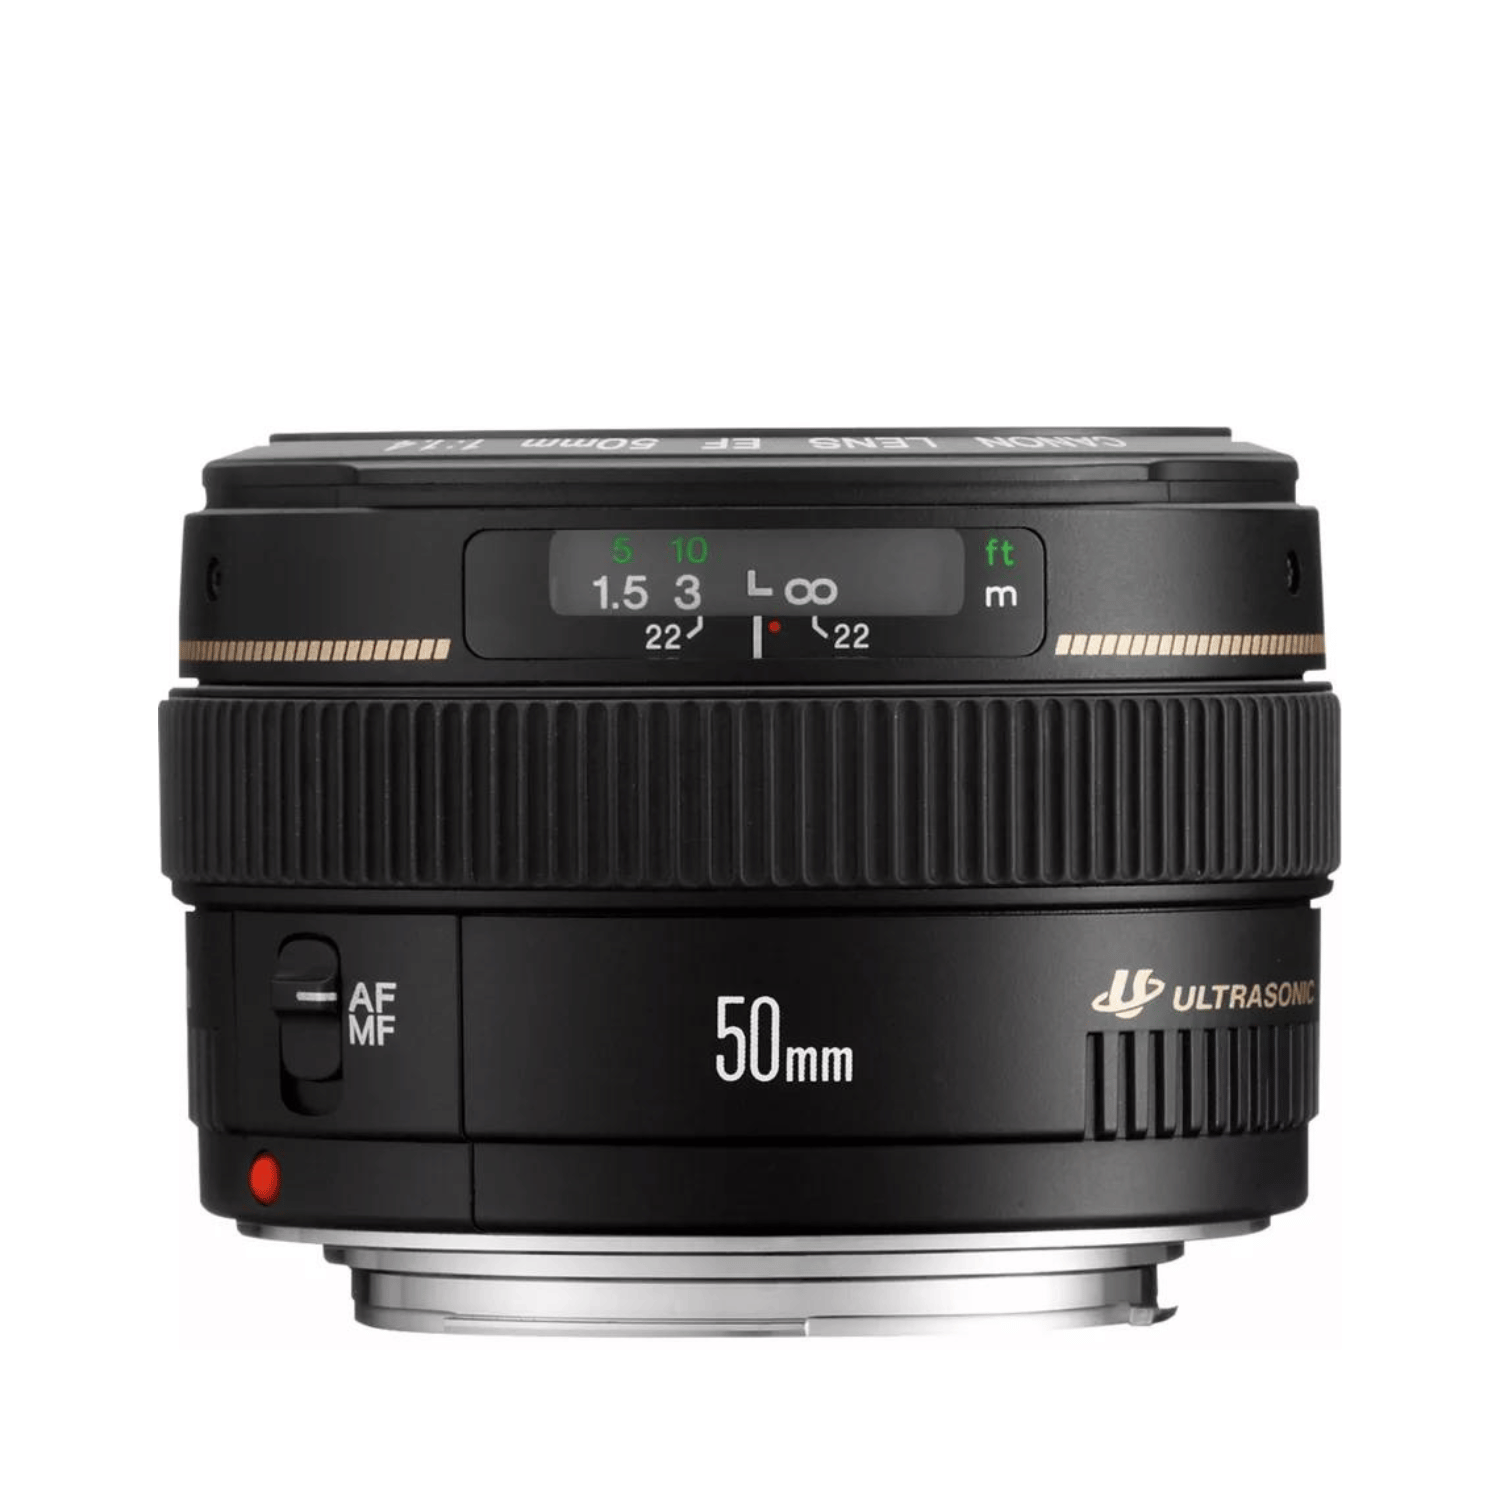 Canon EF 50mm f1.4 USM - Gar. Canon Italia -Cine Sud è da 48 anni sul mercato! 2515A012